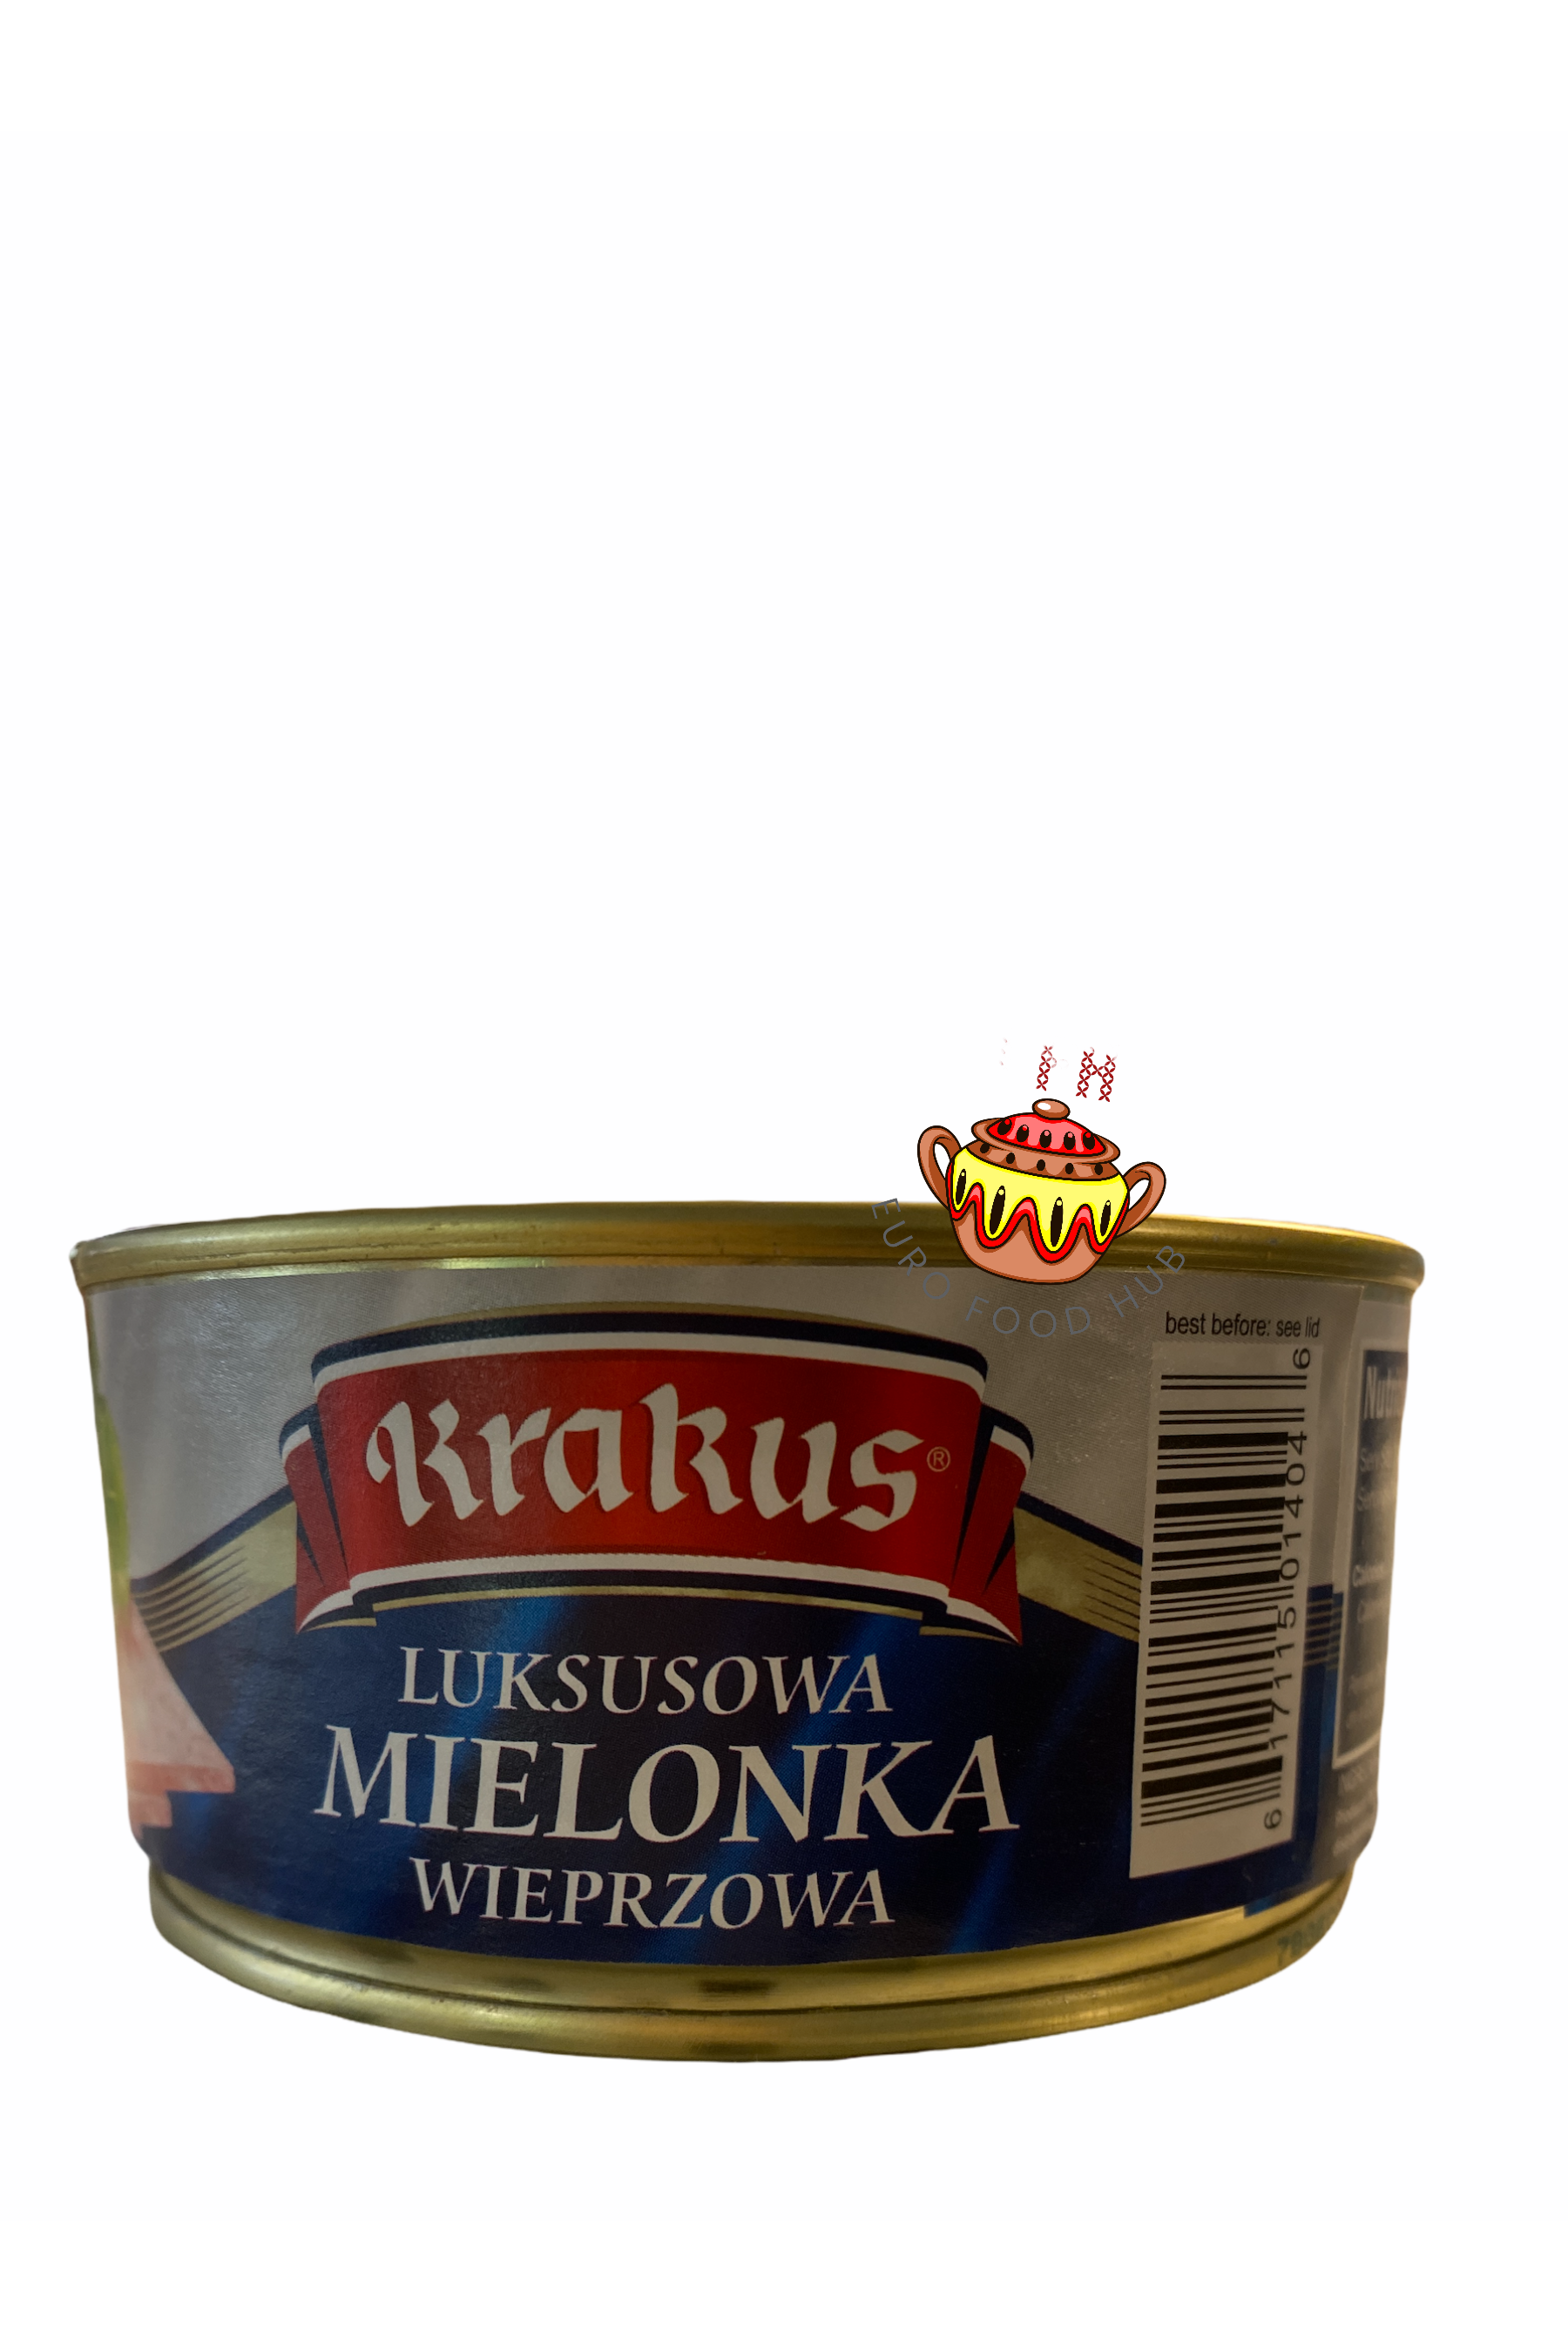 Krakus Polish Luncheon Meat - Luksusowa MIELONKA Wieprzowa - 10.5 oz